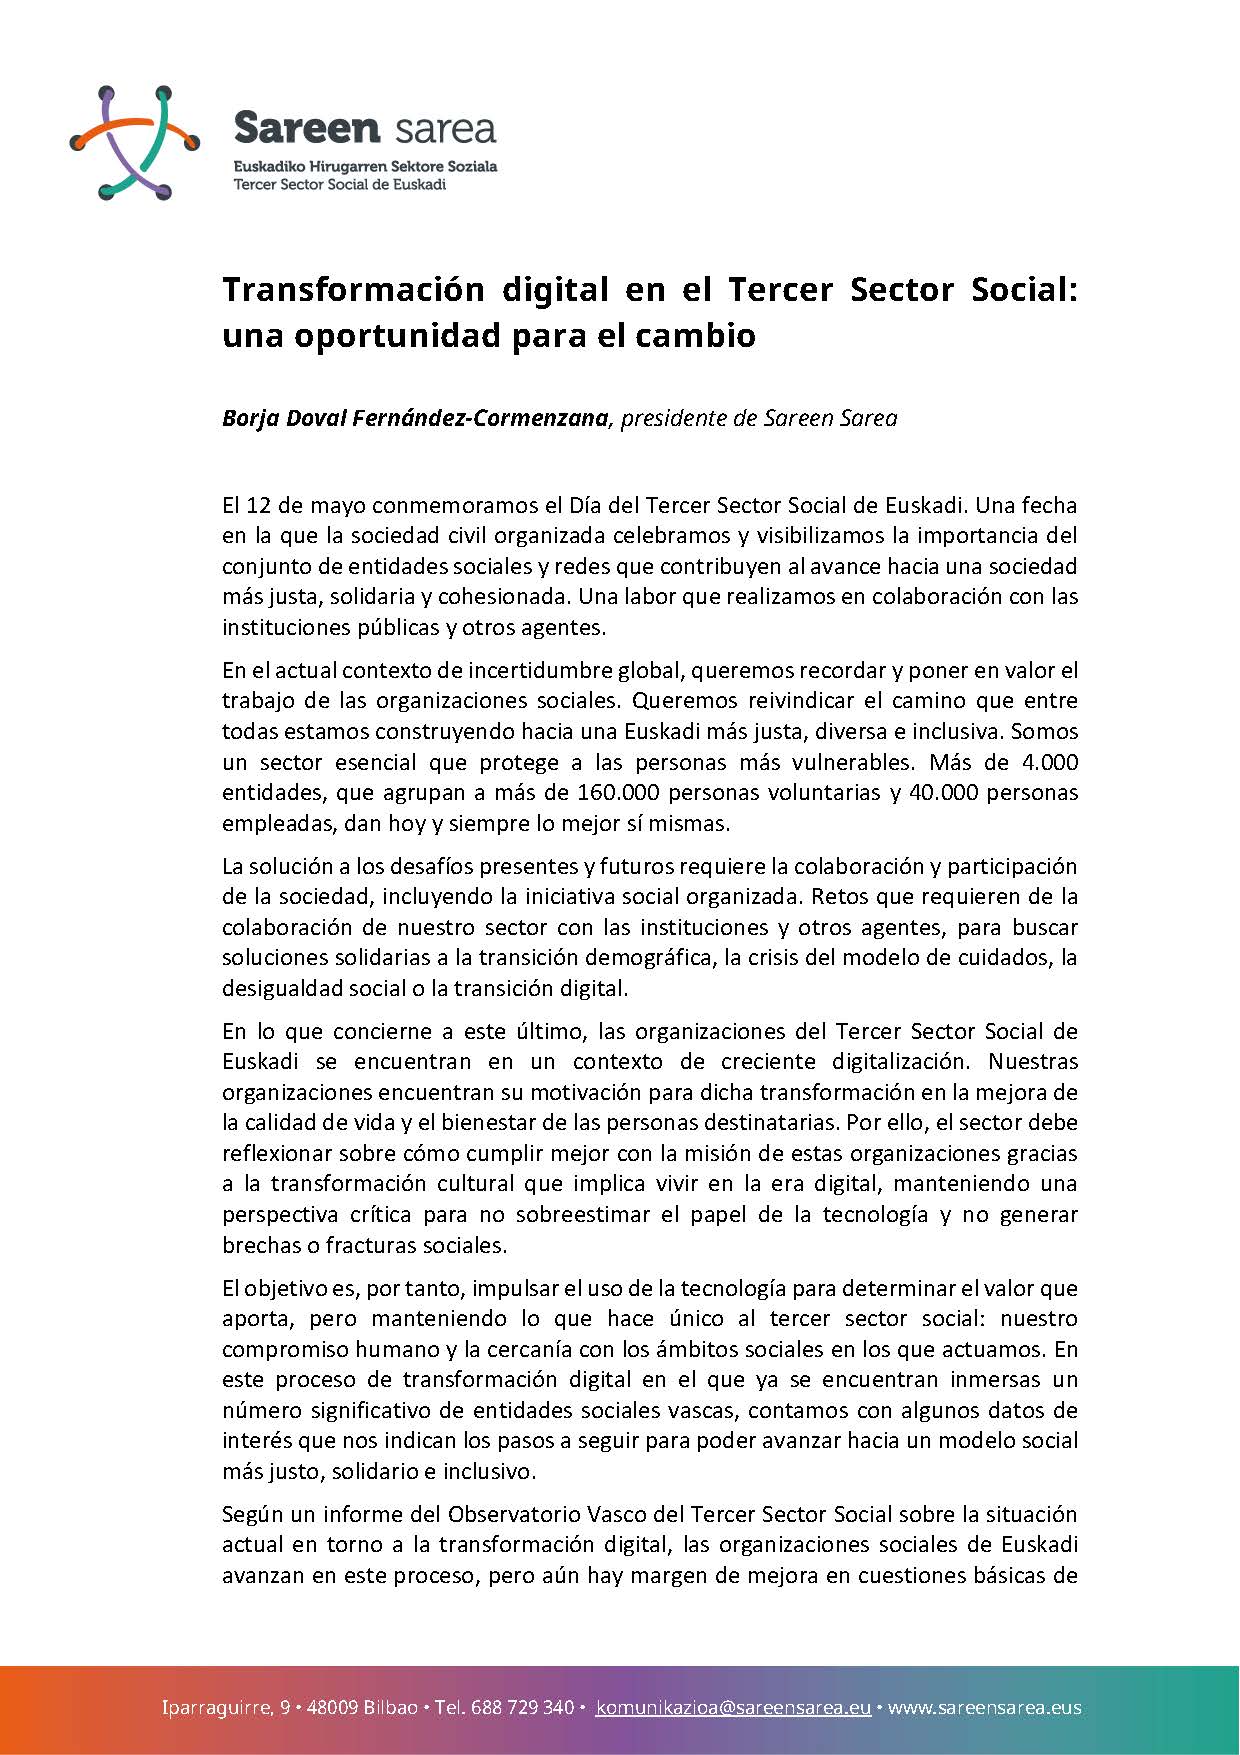 Artículo de opinión: Digitalización en el Tercer Sector Social de Euskadi